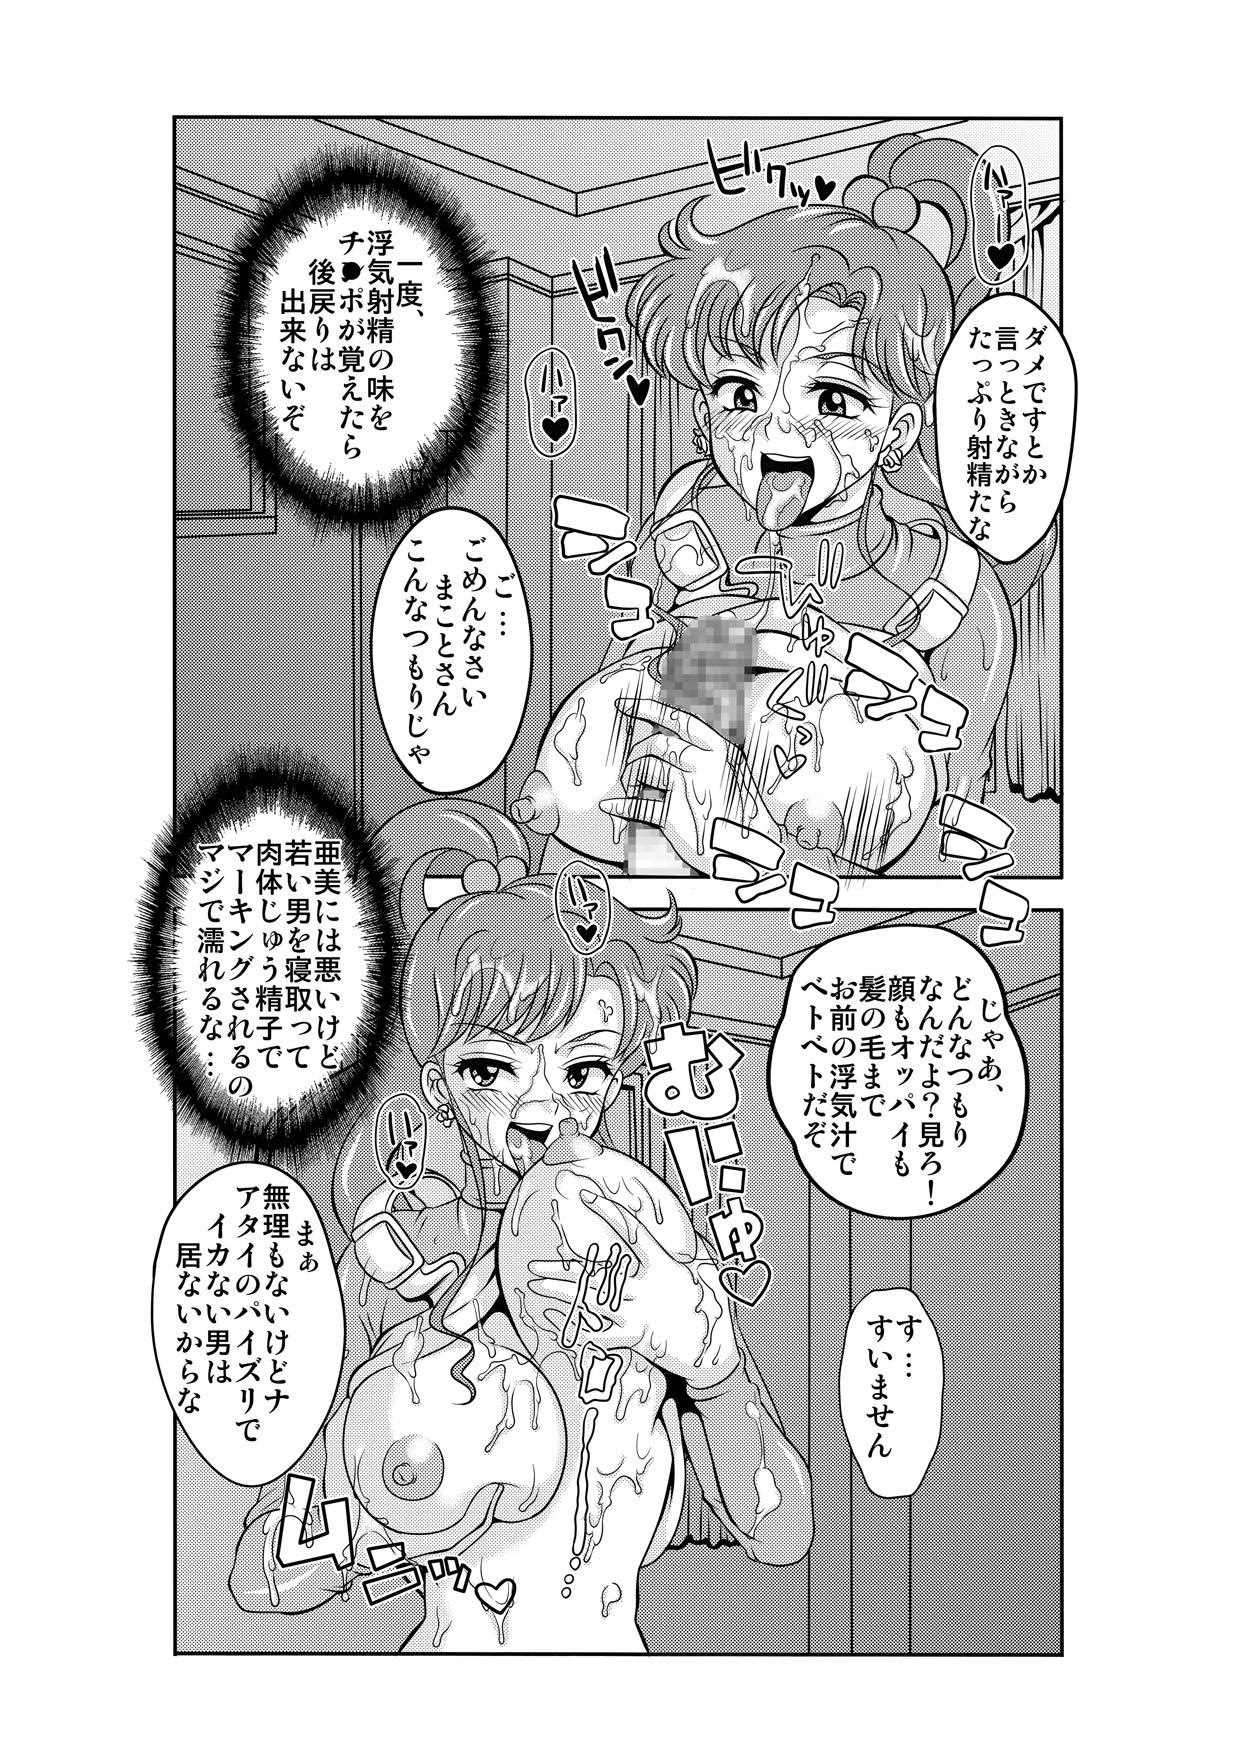 Casa Netori Netorare Toshiue Cosplayer-tachi no Yuuwaku - Sailor moon Italiano - Page 10